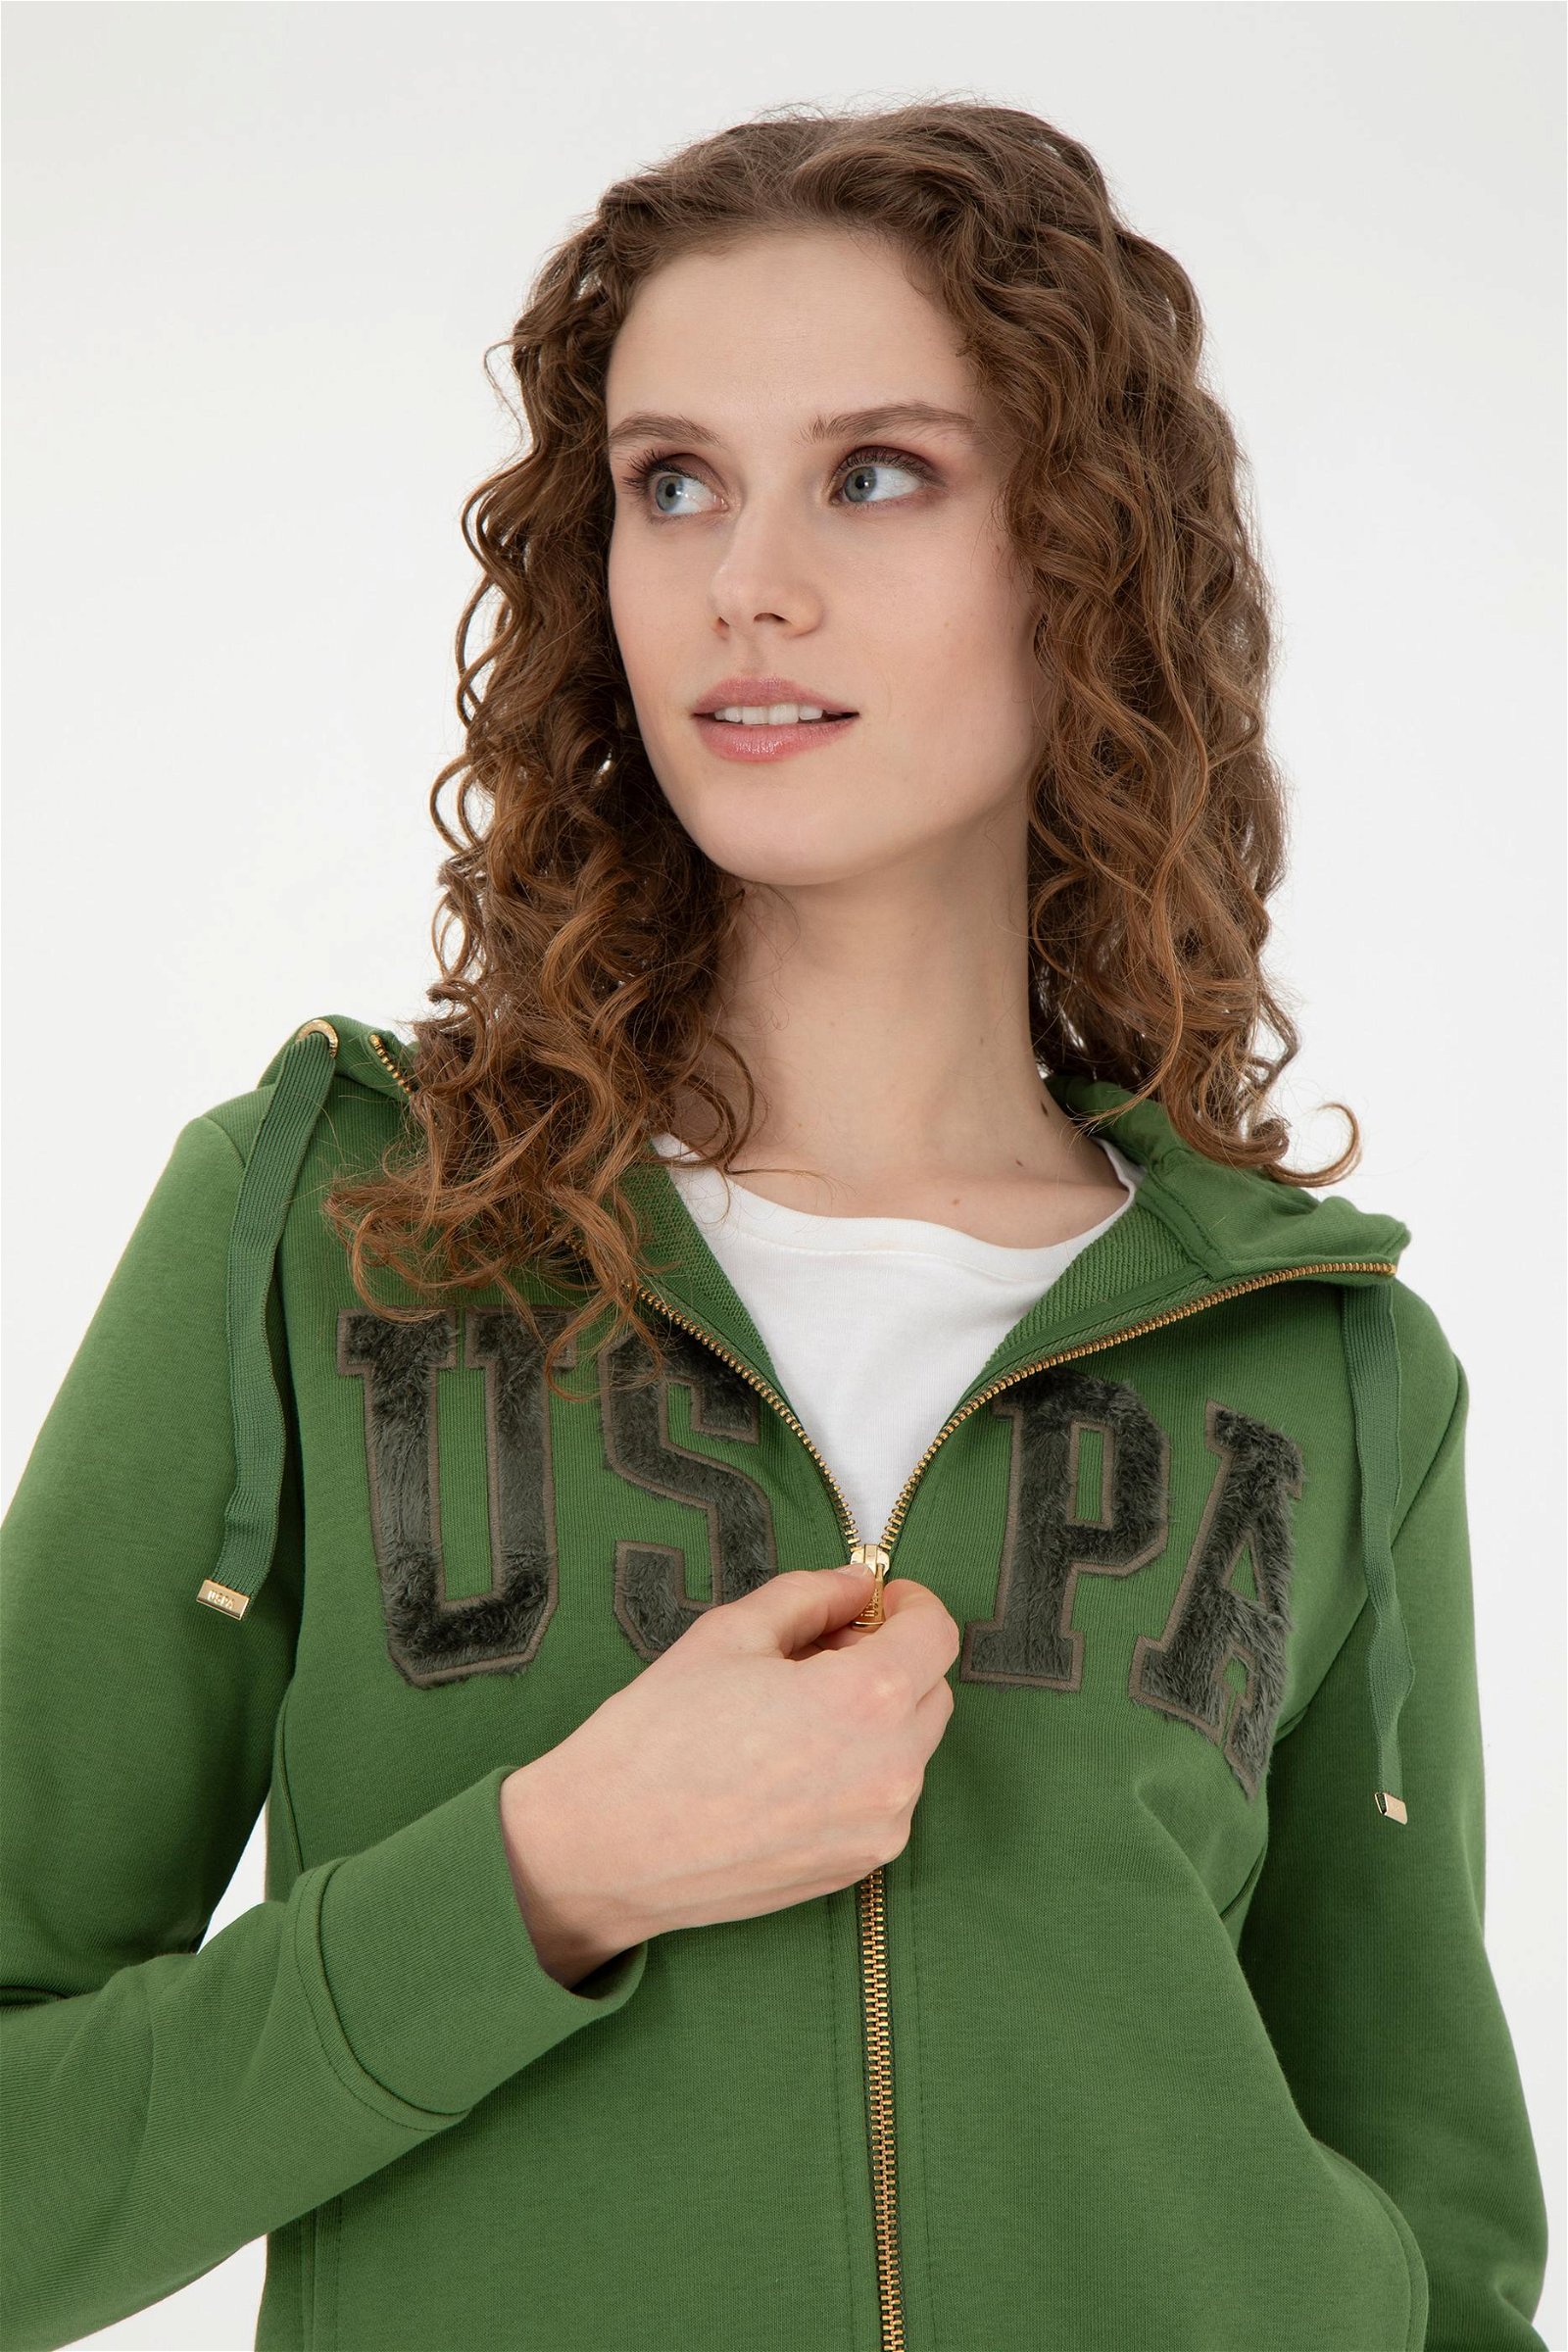 Kadın Yeşil Basic Sweatshirt